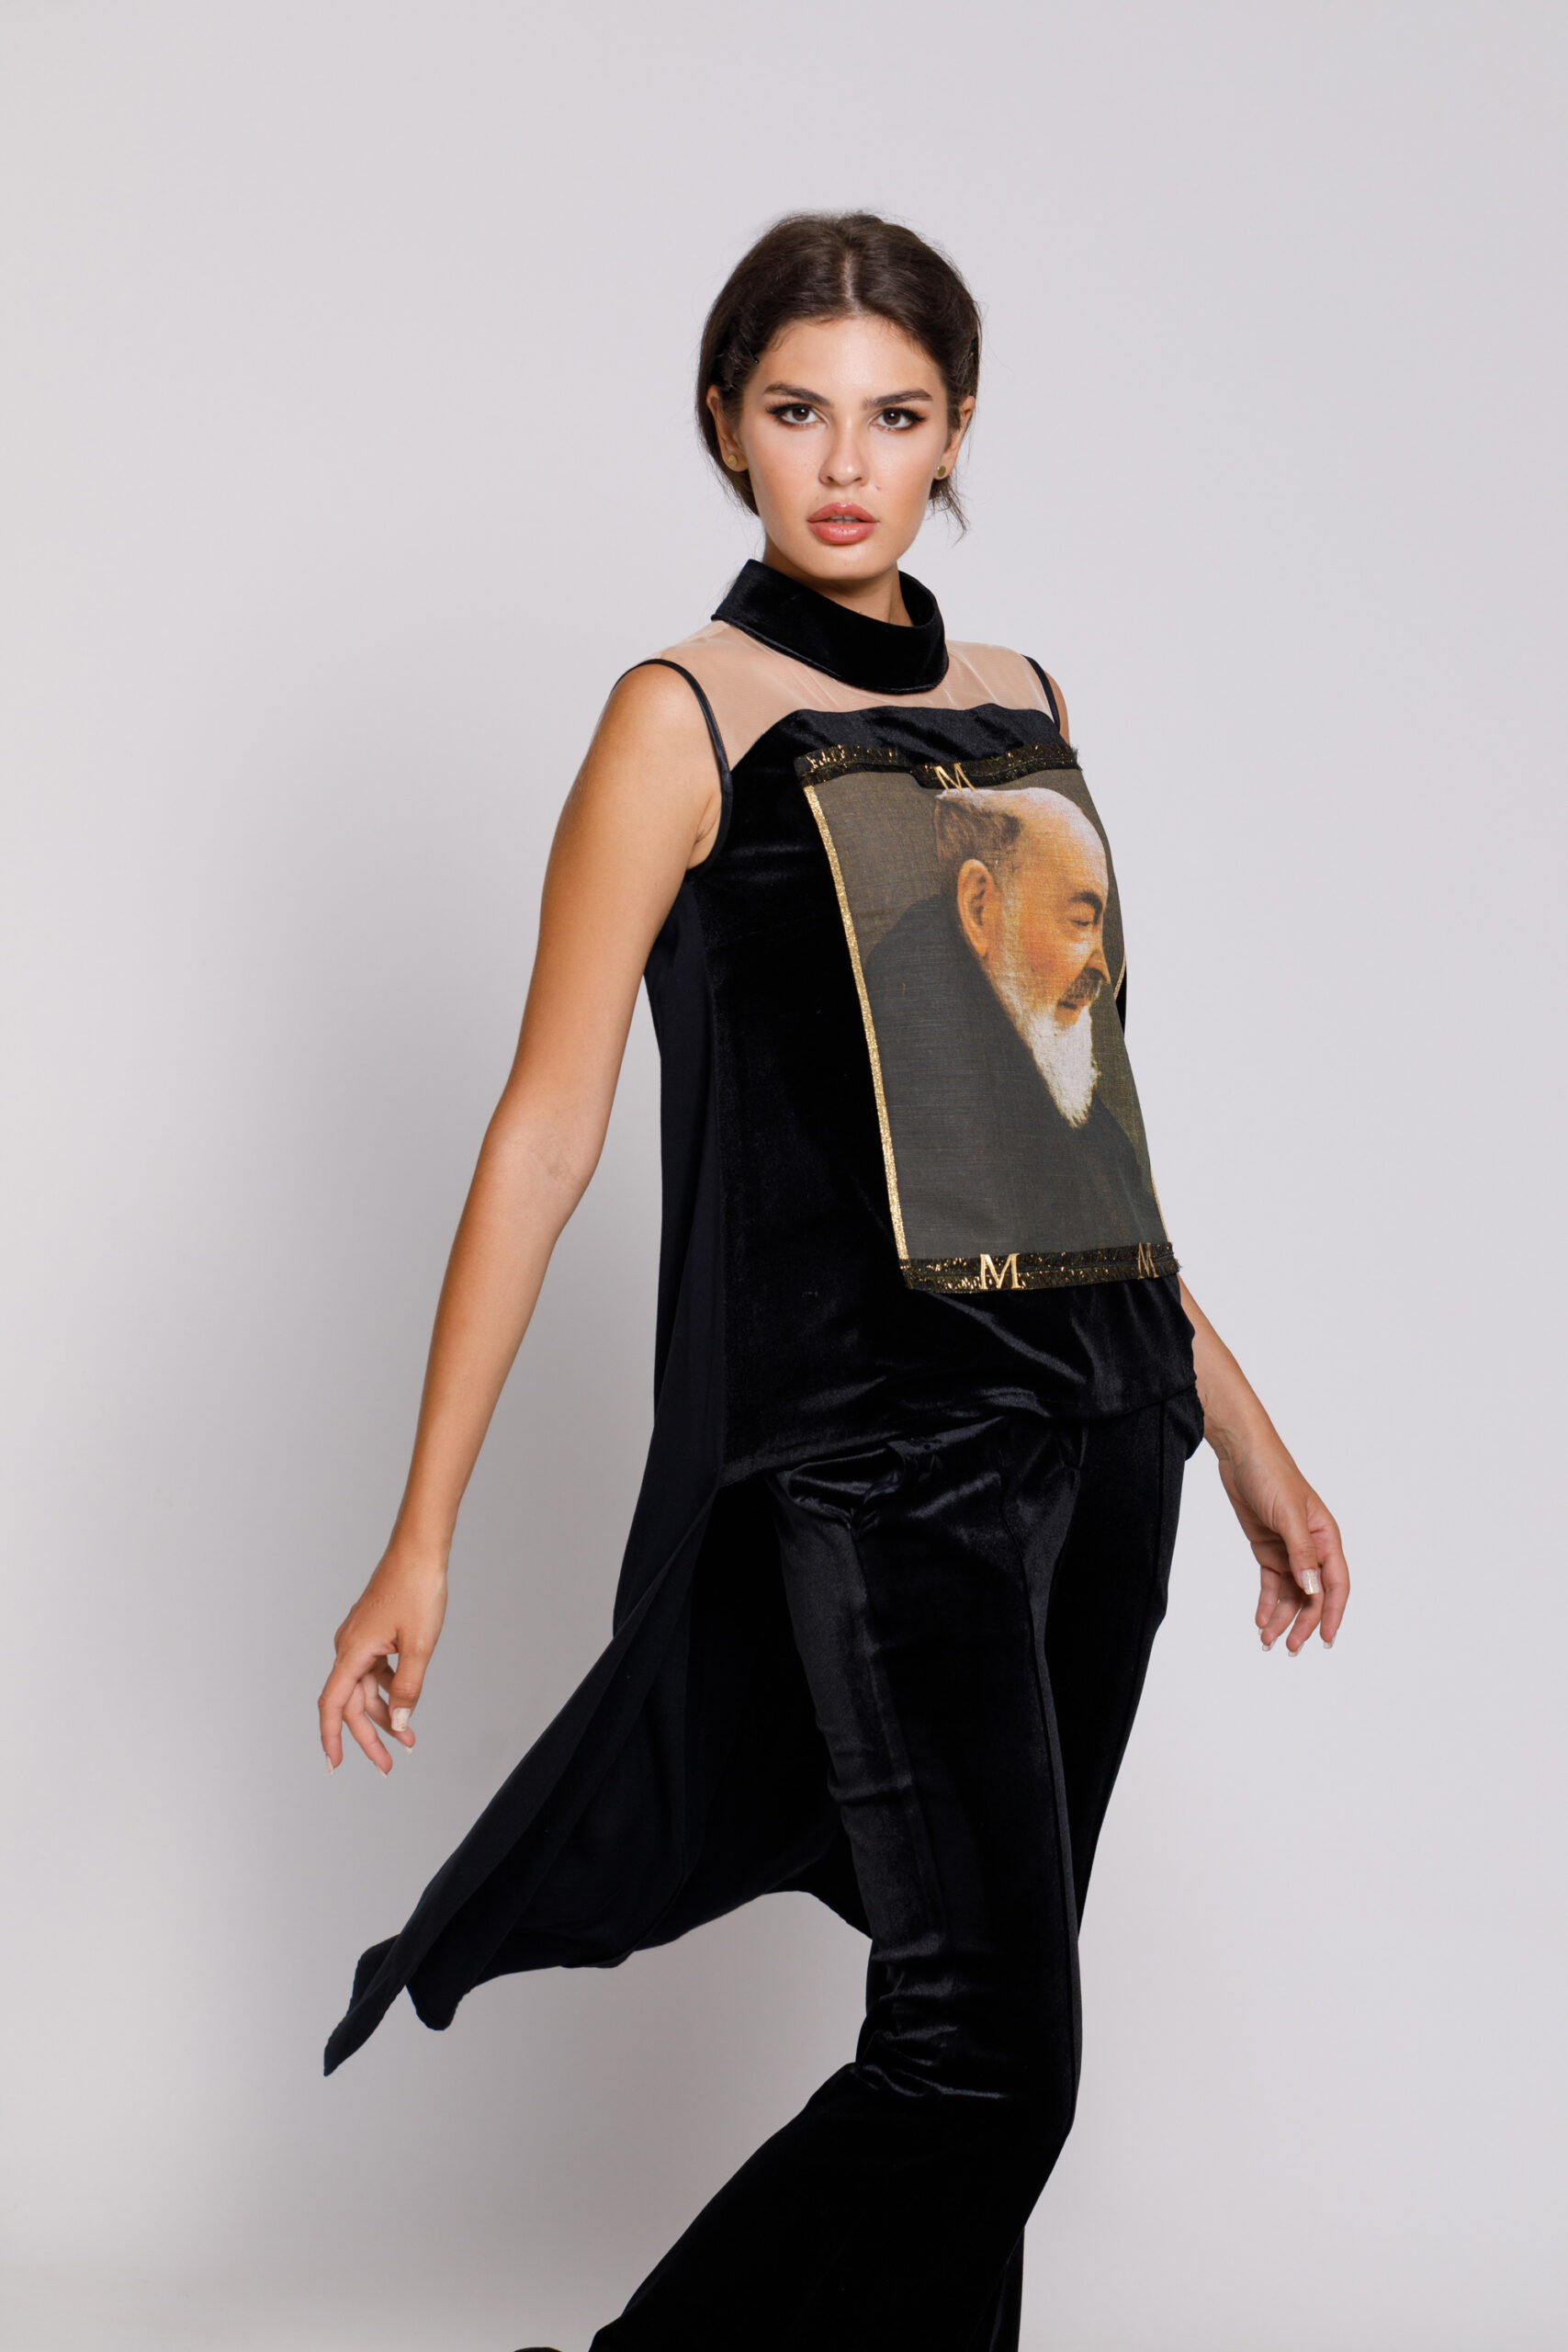 Bluza PAPY eleganta neagra cu aplicatie tip tablou. Materiale naturale, design unicat, cu broderie si aplicatii handmade